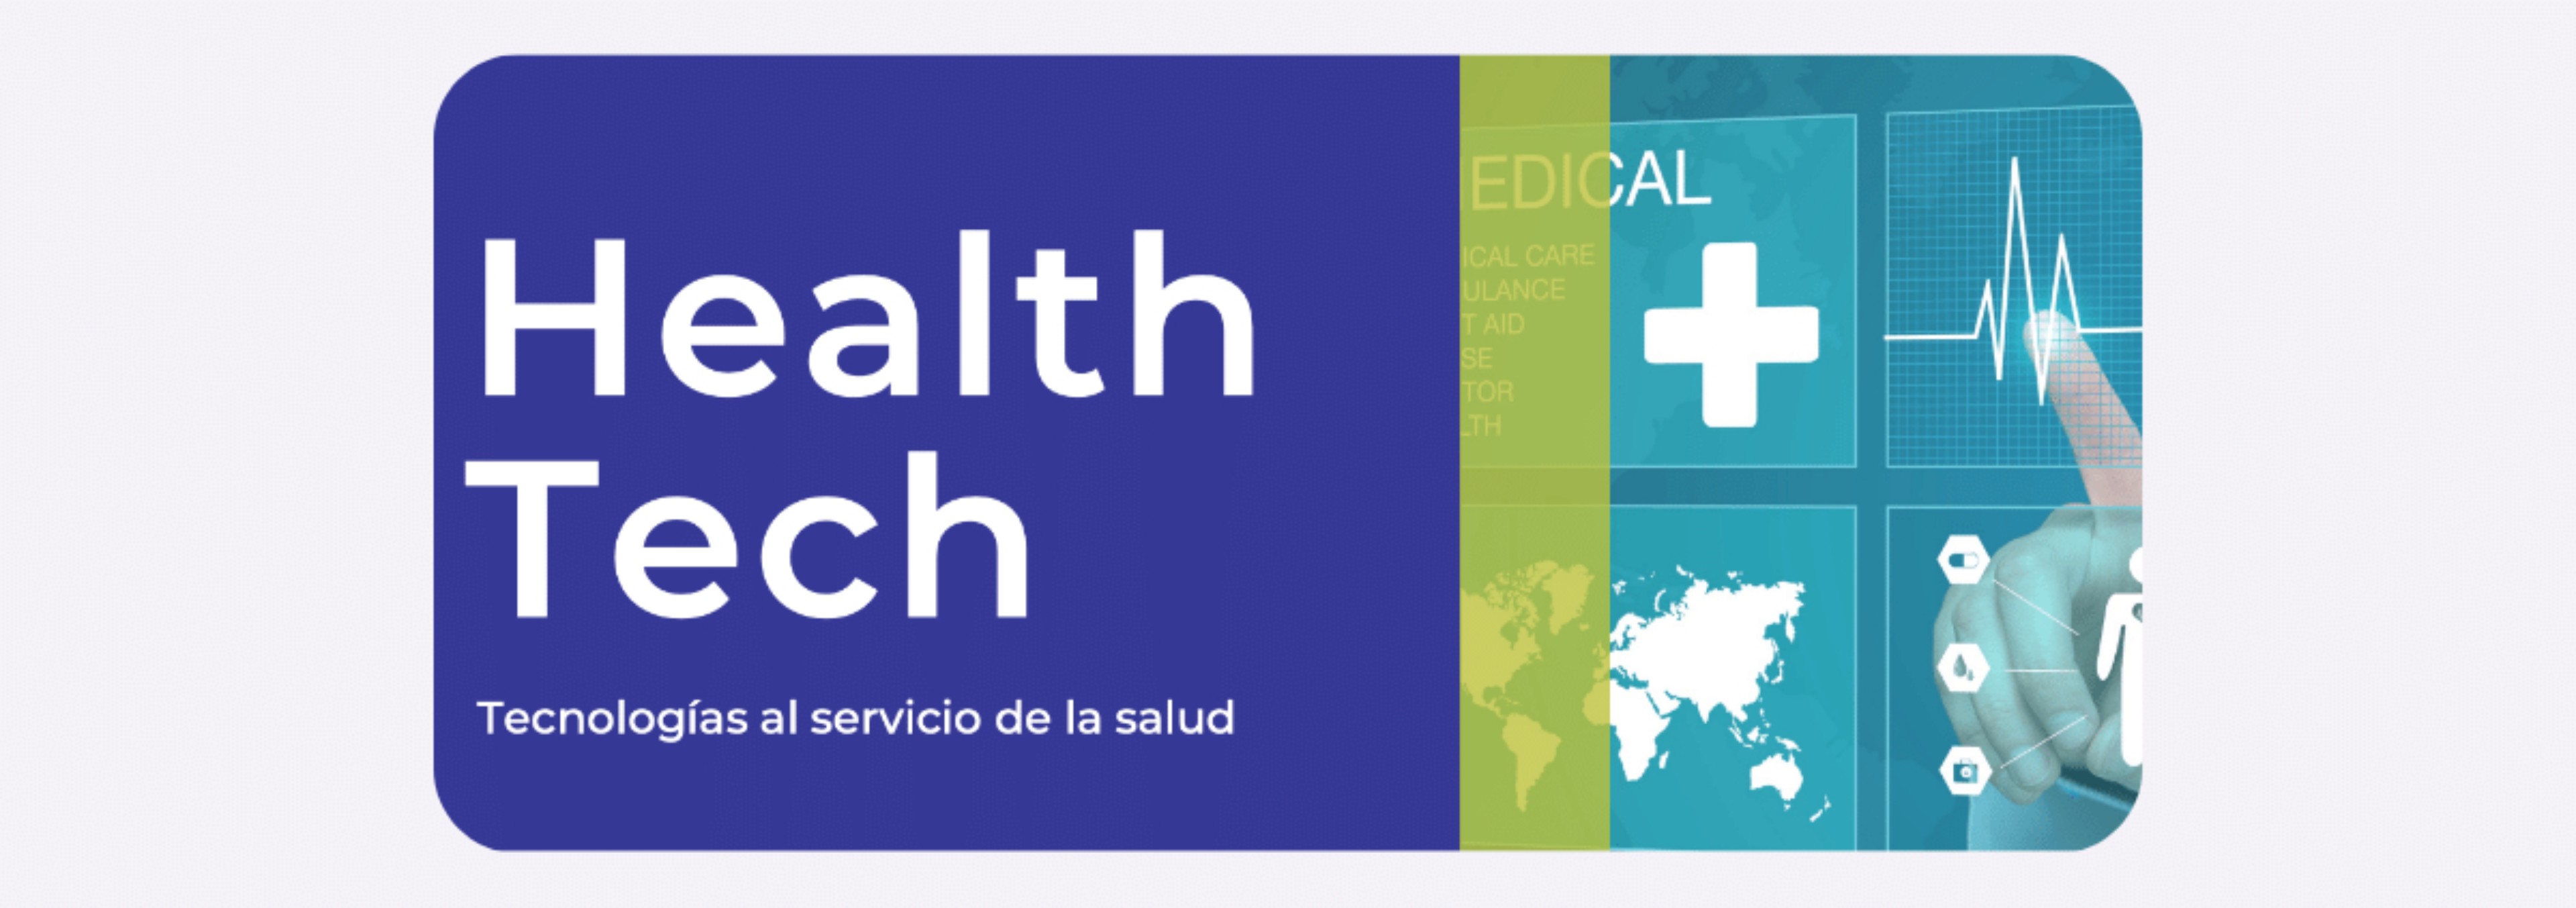 Health Tech. Tecnologías al servicio de la salud